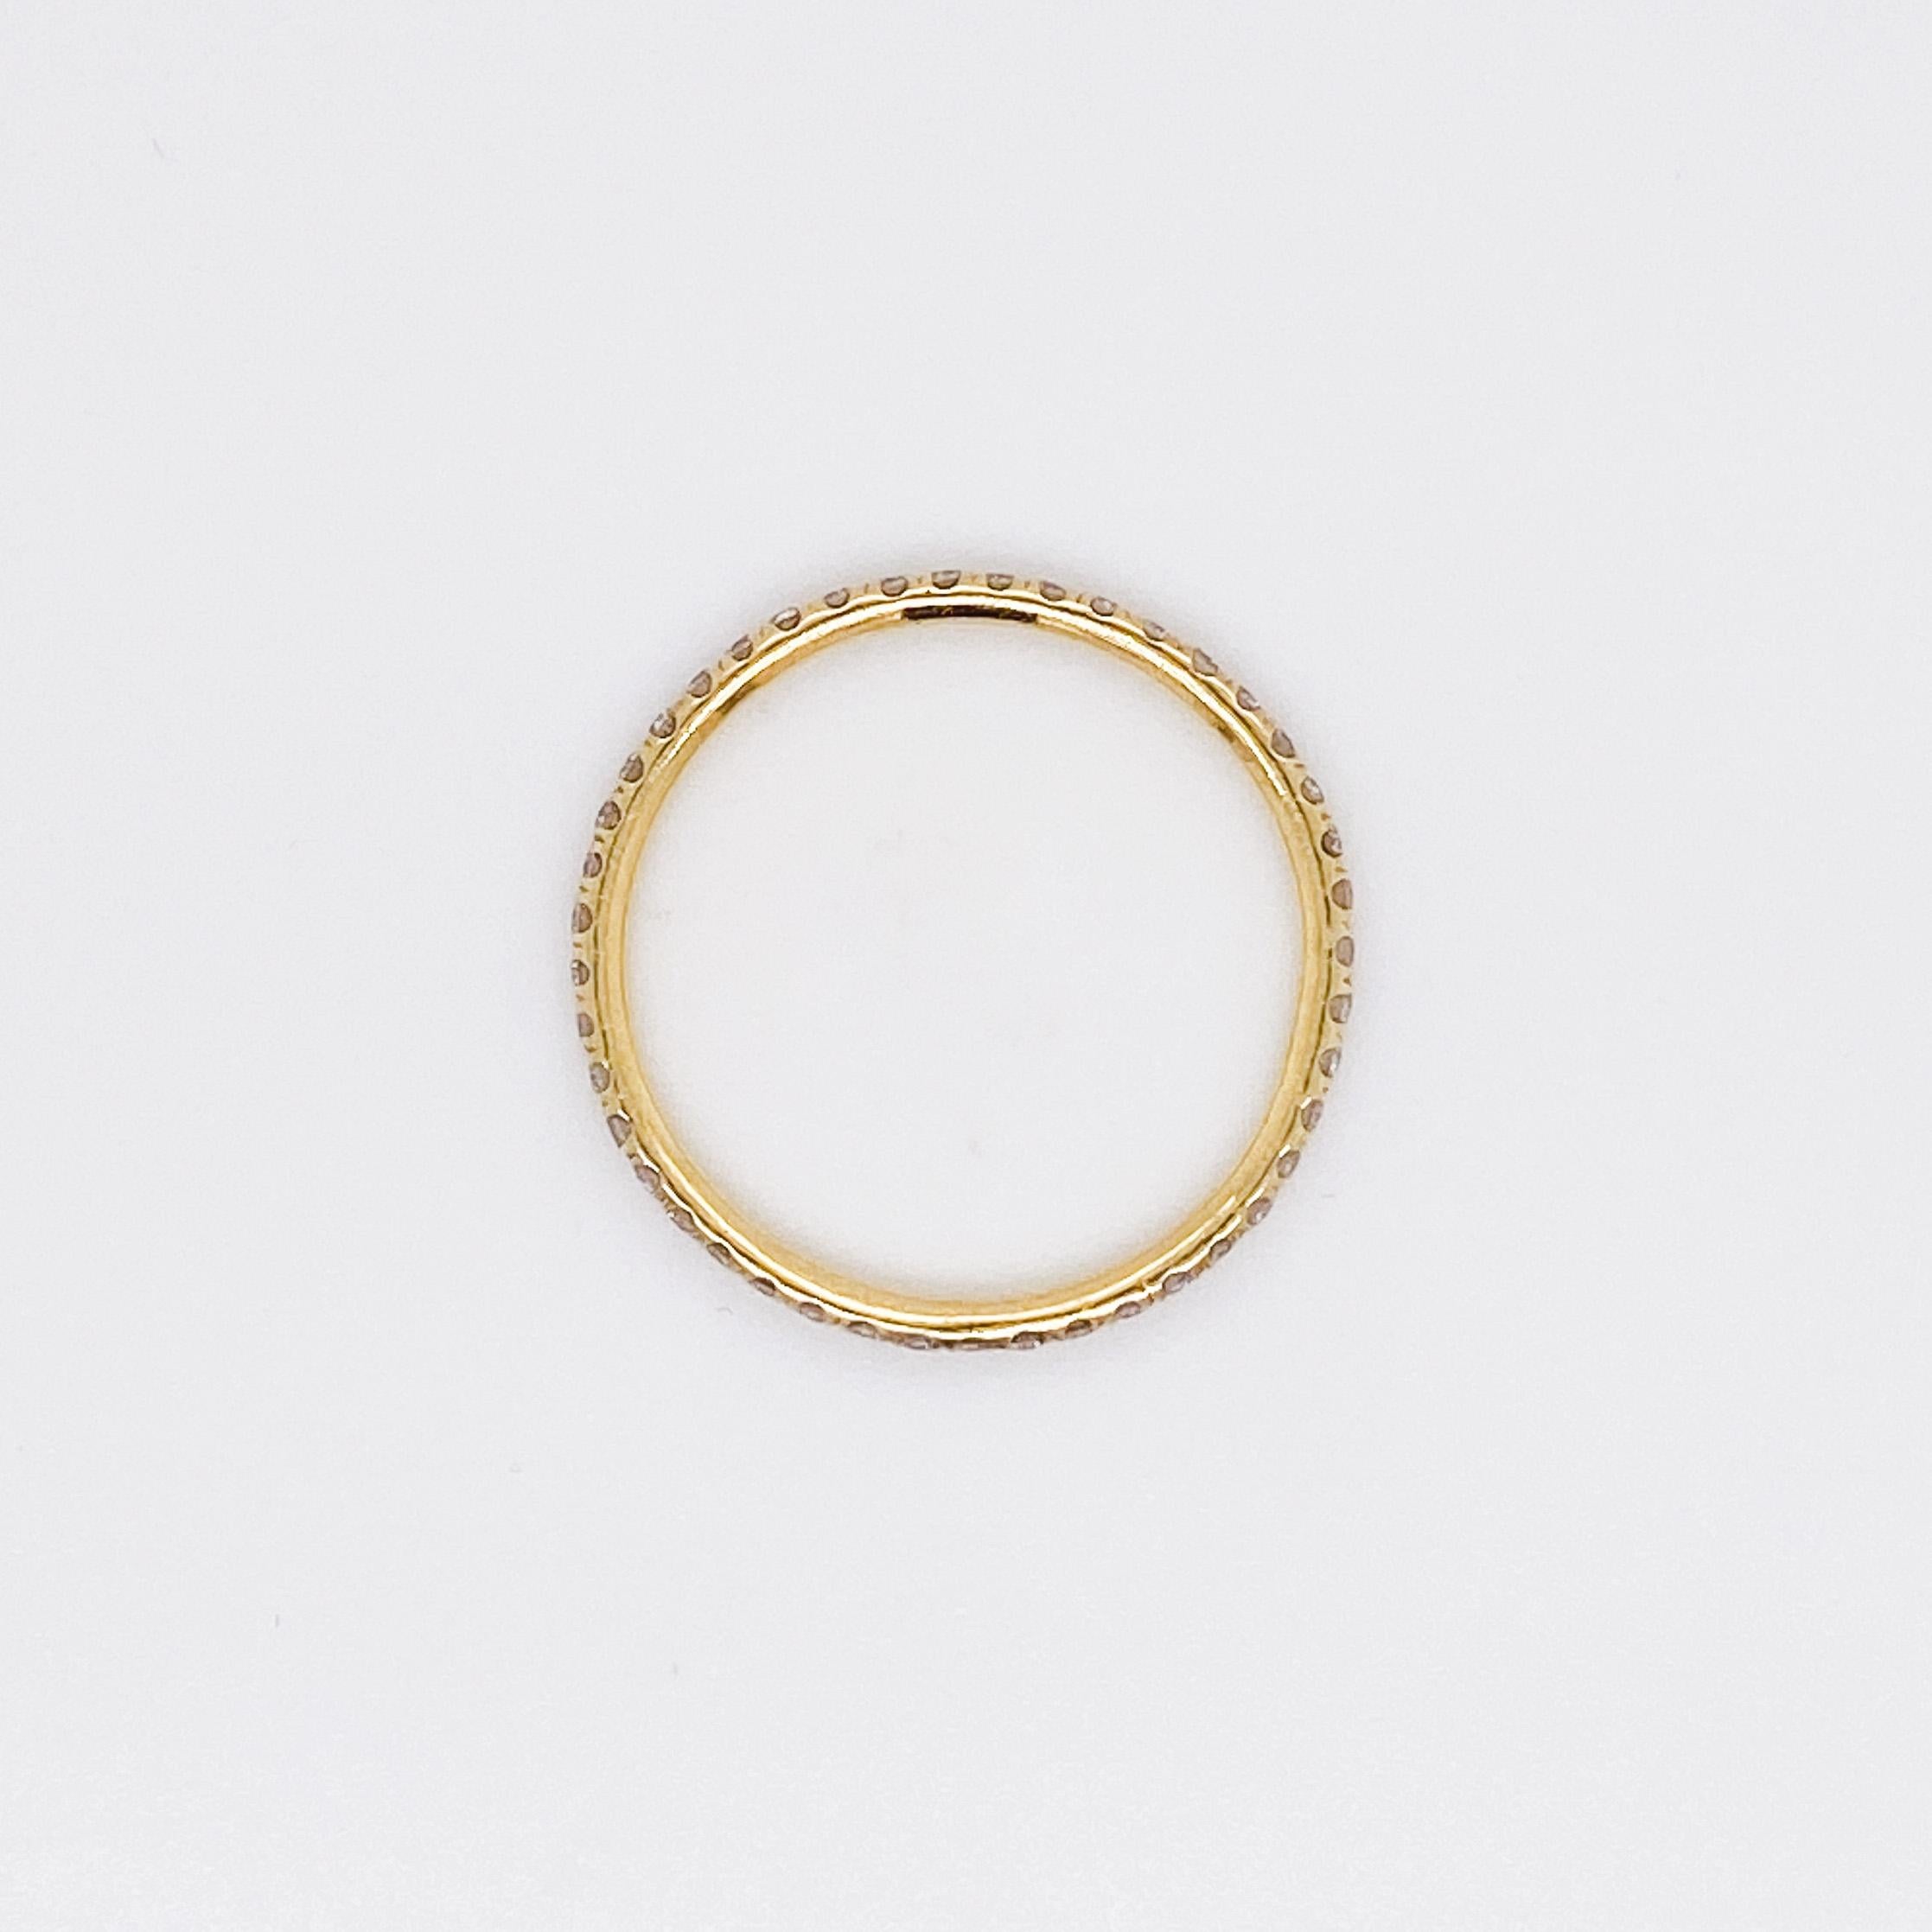 Cette bague d'éternité élancée en diamant est réalisée en or jaune classique 18 carats. Le bracelet est extrêmement confortable à porter avec seulement 1,7 mm de largeur et 1,5 mm d'épaisseur. C'est un anneau d'éternité parfait pour être porté et